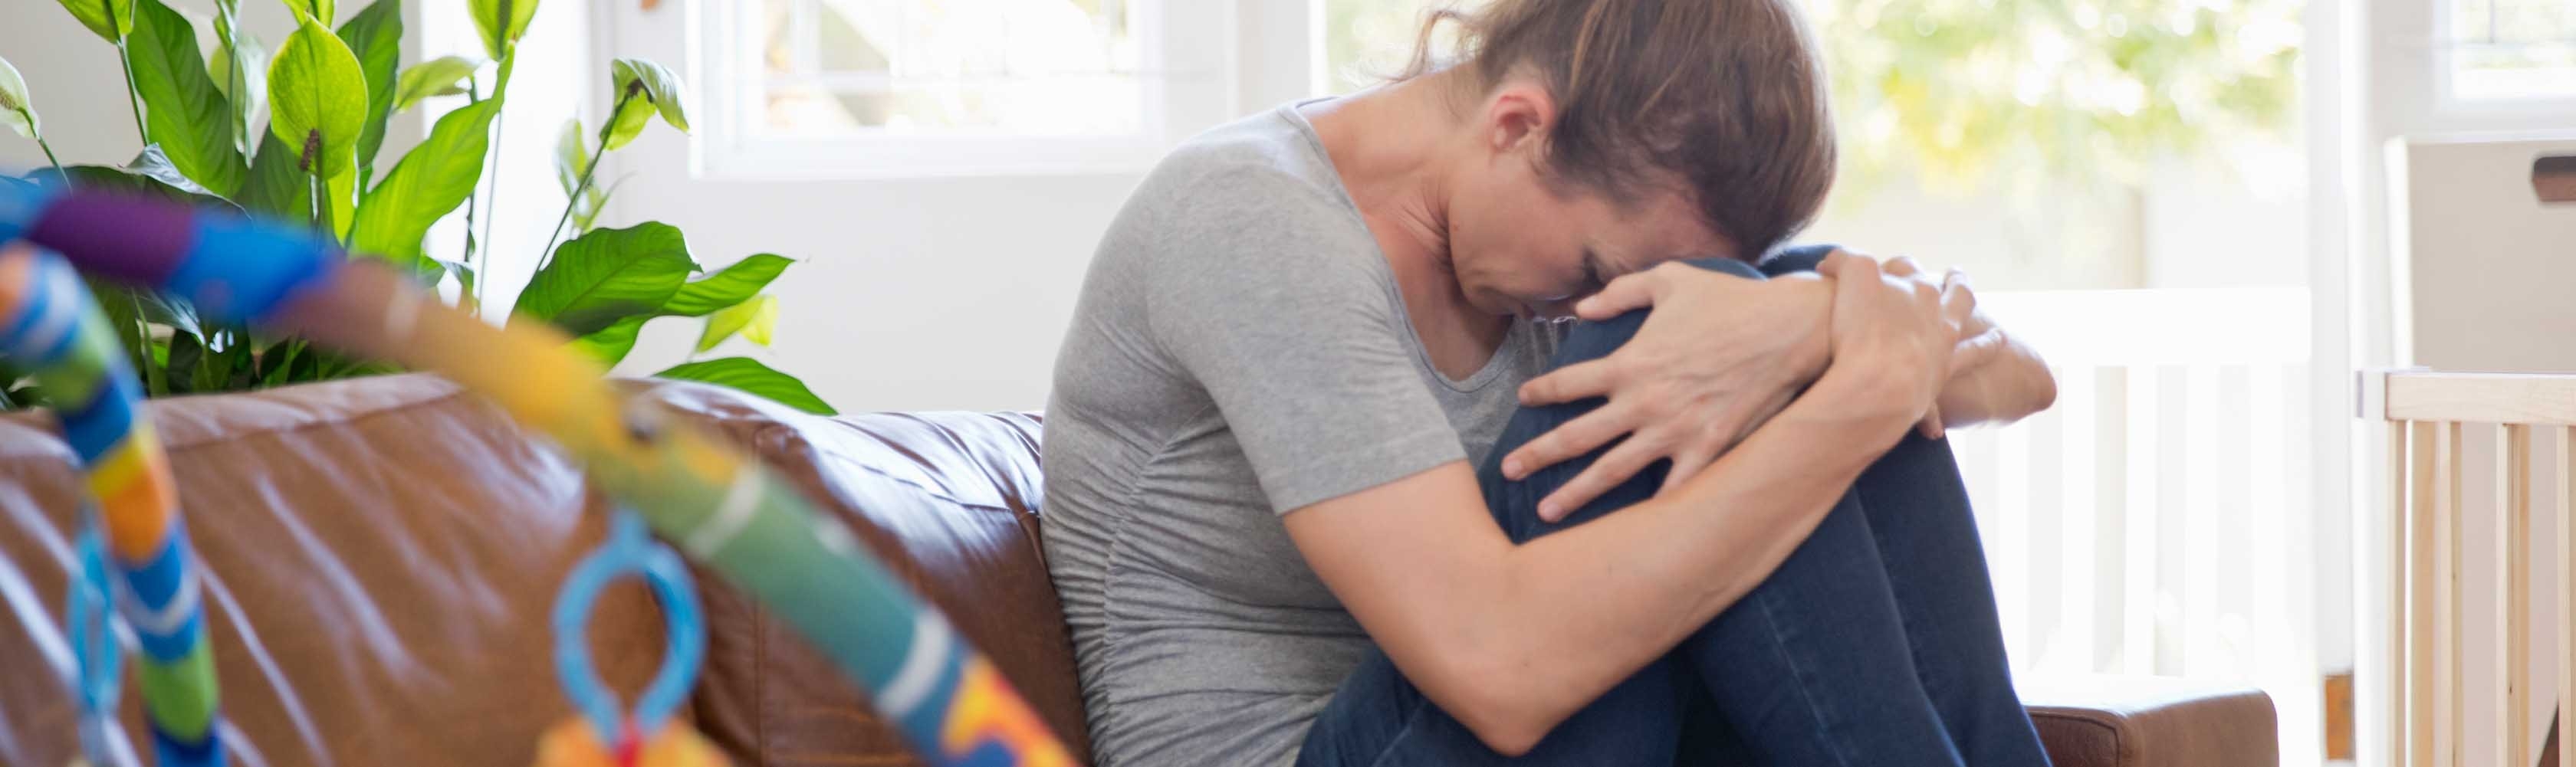 Geburtstrauma – Frau sitzt weinend auf dem Sofa.